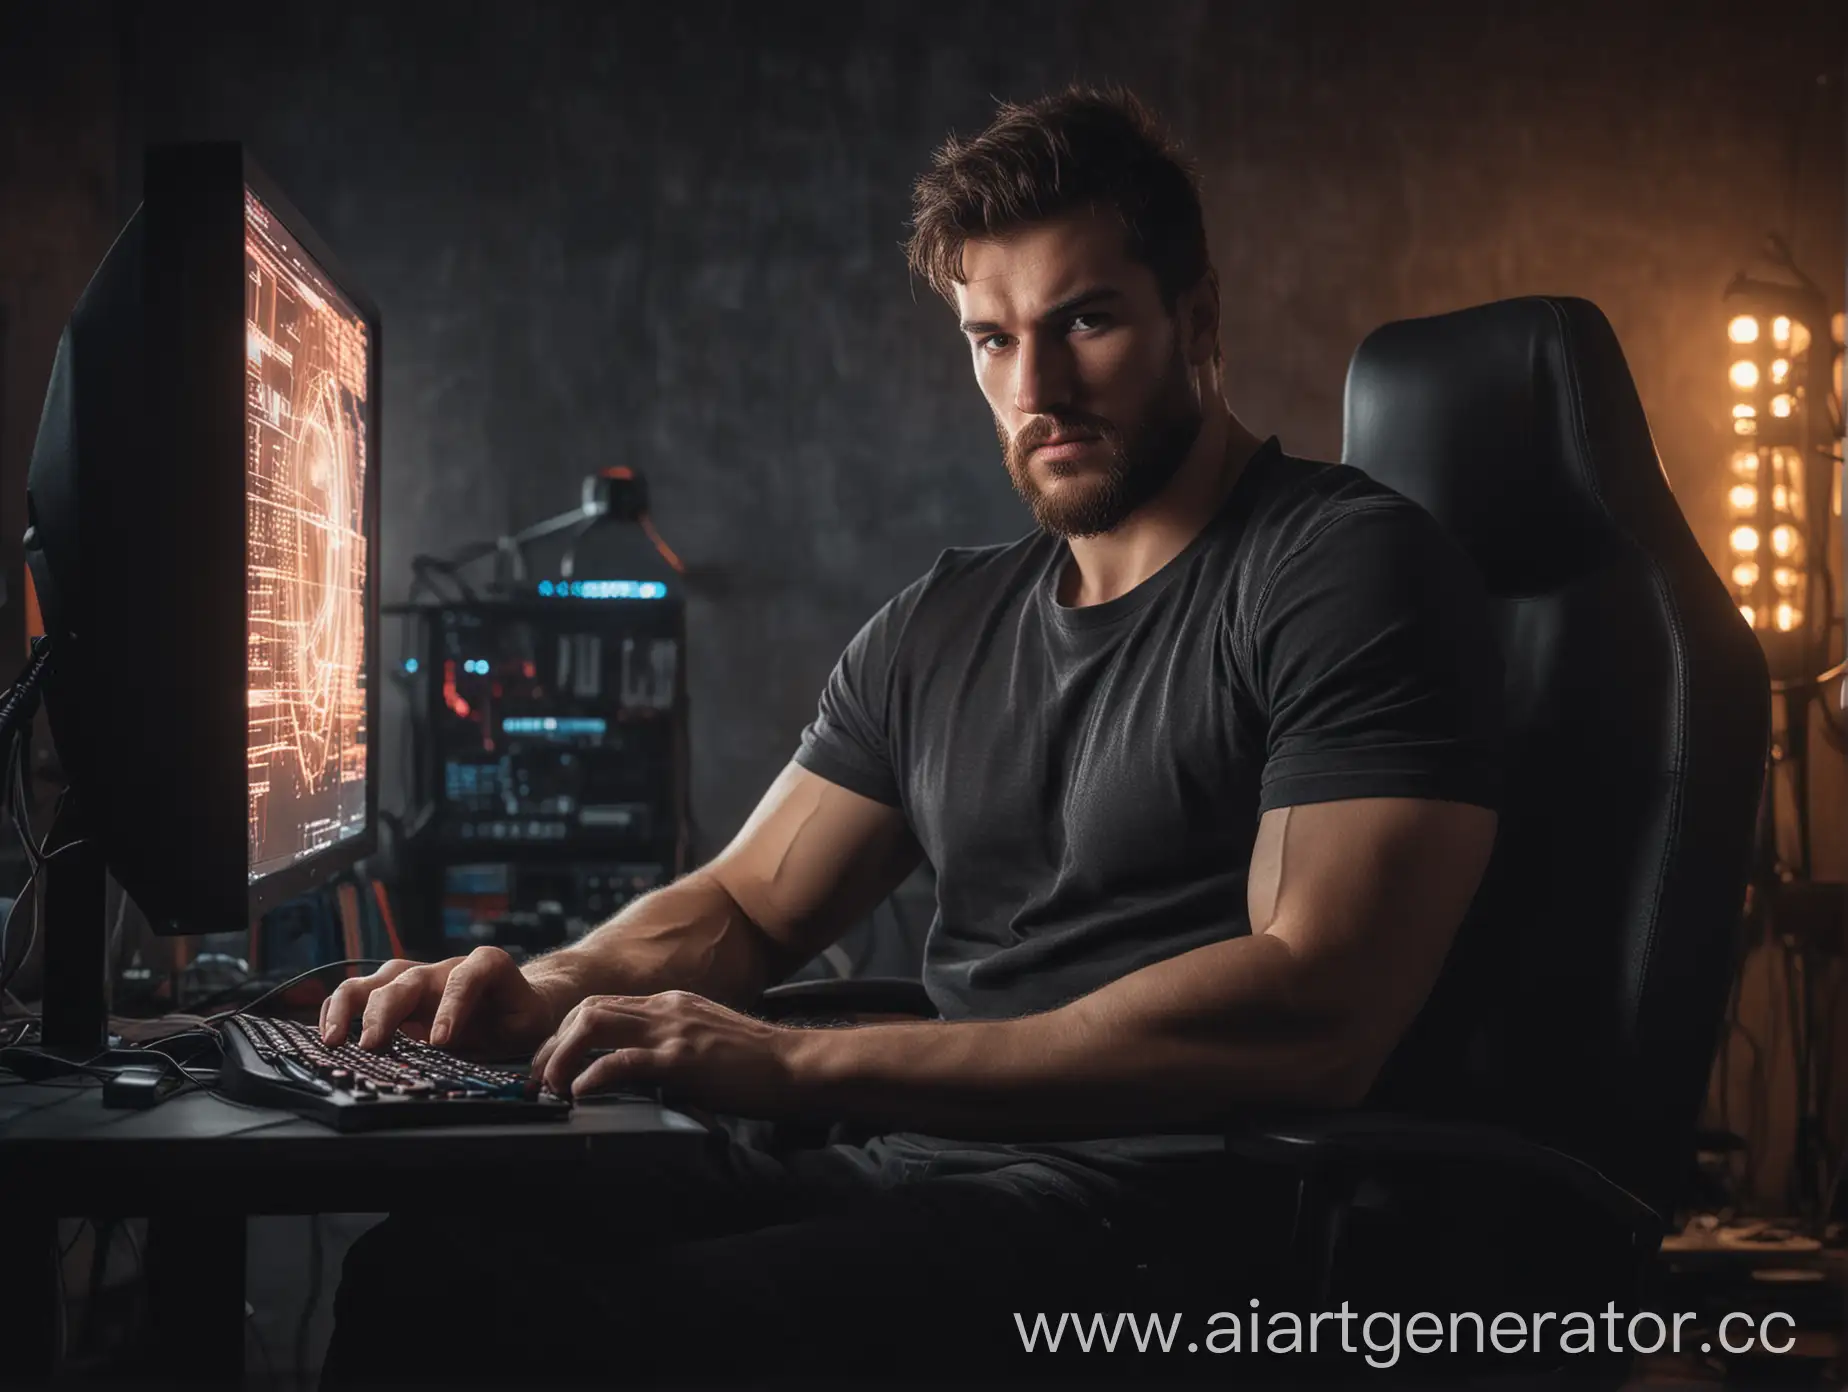 накачанный, брутальный, мужчина, программист, сидит в крутом кресле, смотрит в камеру, тусклое освещение, ярко горит экран компьютера